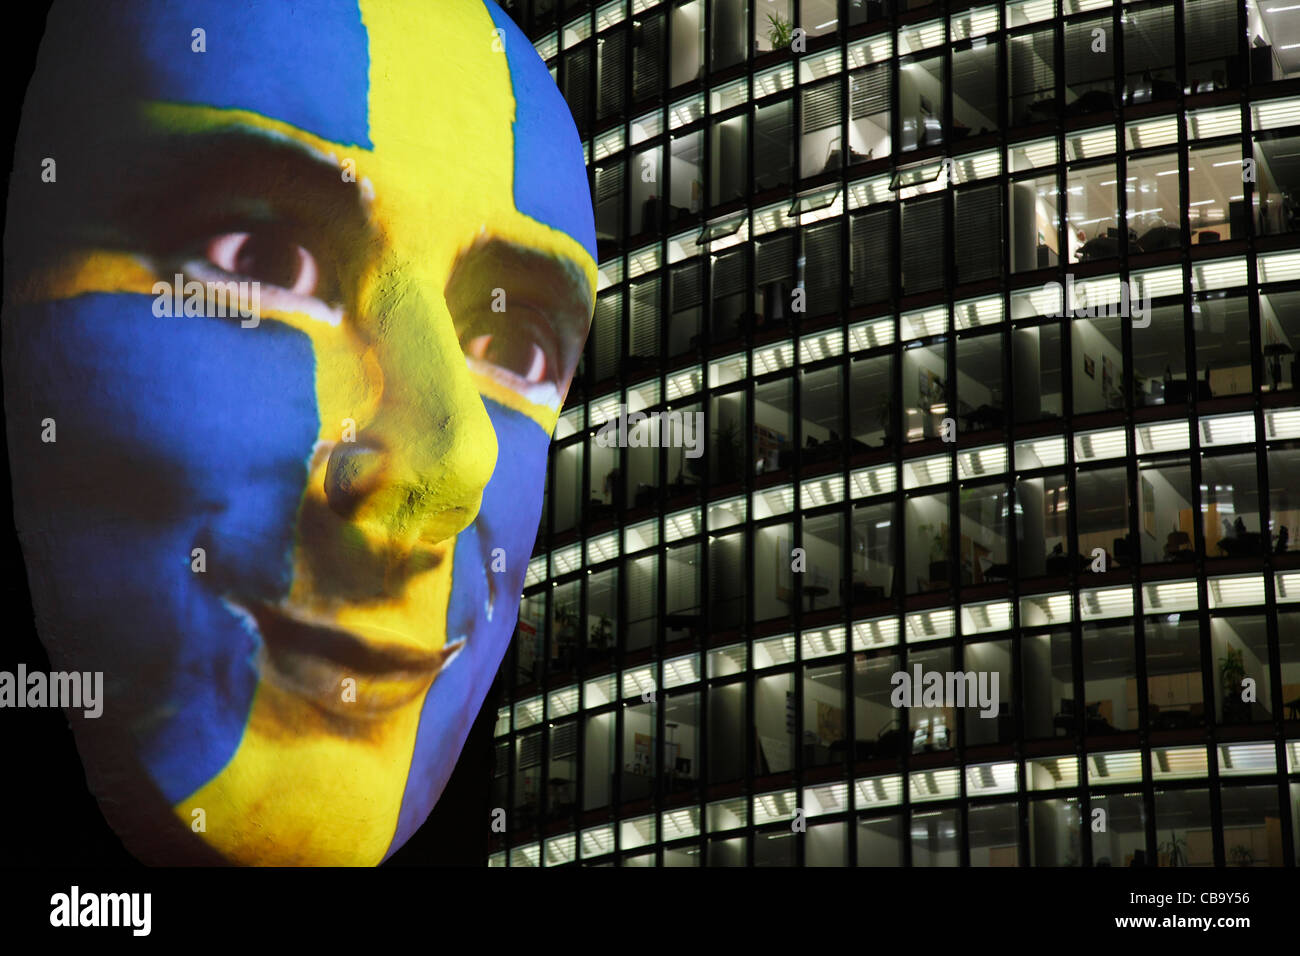 Enorme scultura di un viso illuminato da un'immagine di una bandiera svedese faccia dipinta durante la festa delle luci 2011 a Berlino Foto Stock